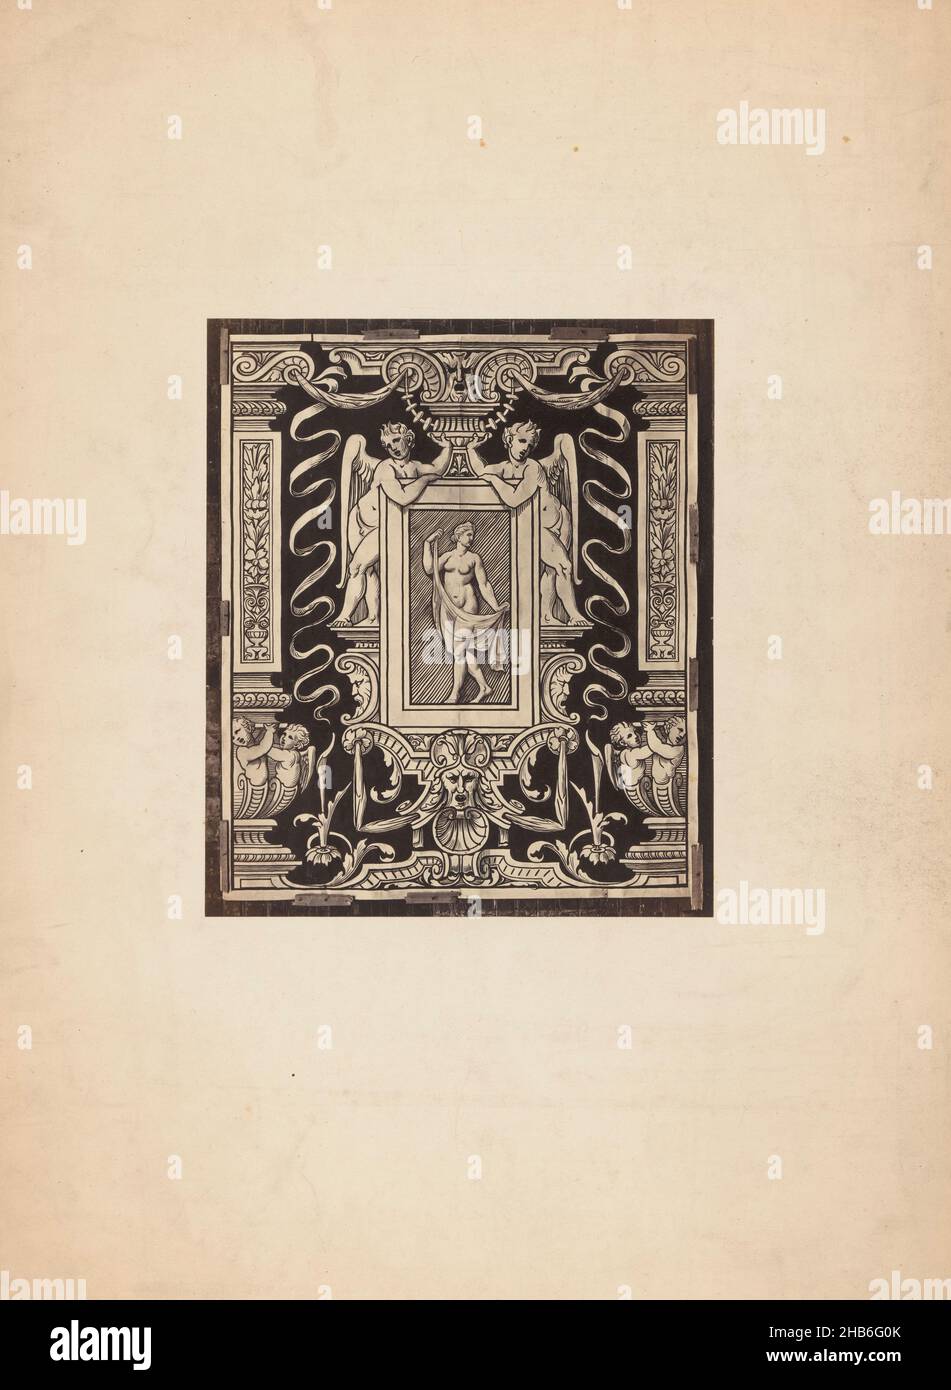 Ornamentaler Druck an einer Wand, anonym, c. 1875 - c. 1900, Karton, Albumin-Print, Höhe 201 mm × Breite 171 mm Stockfoto